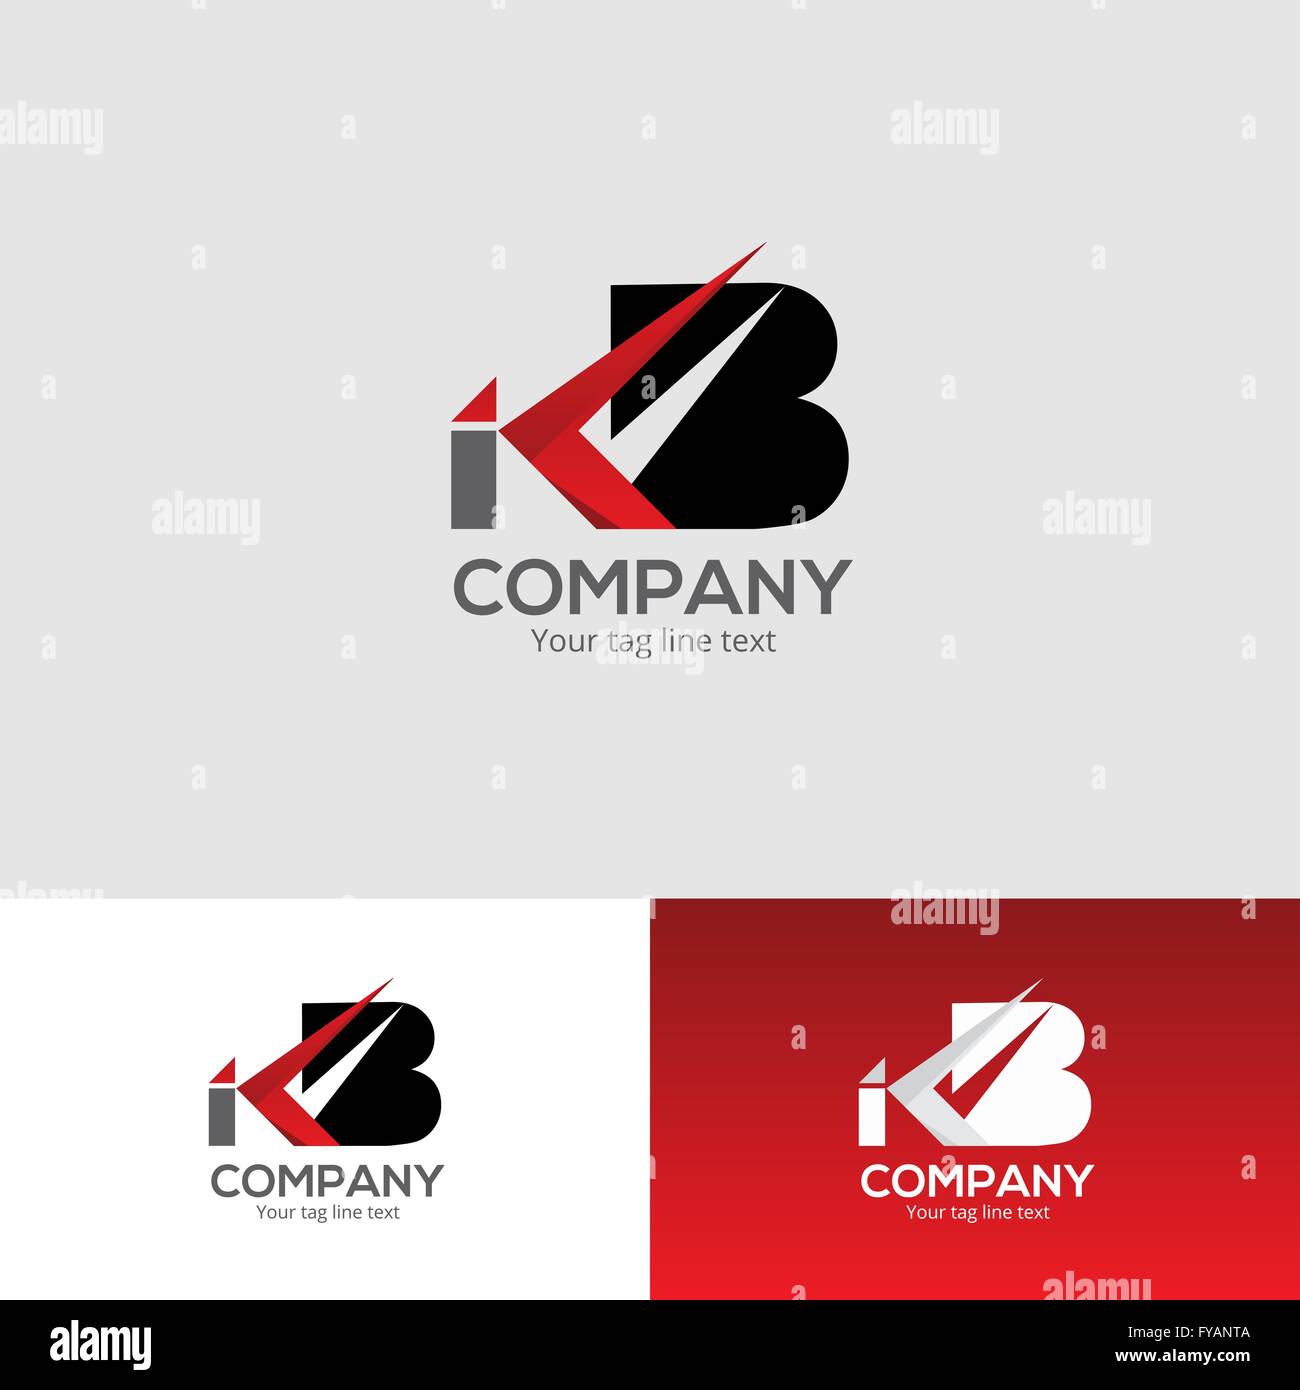 Creative Corporate Logo Design Template Professional Business Card e carta intestata il layout di progettazione completamente modificabile la grafica vettoriale Illustrazione Vettoriale